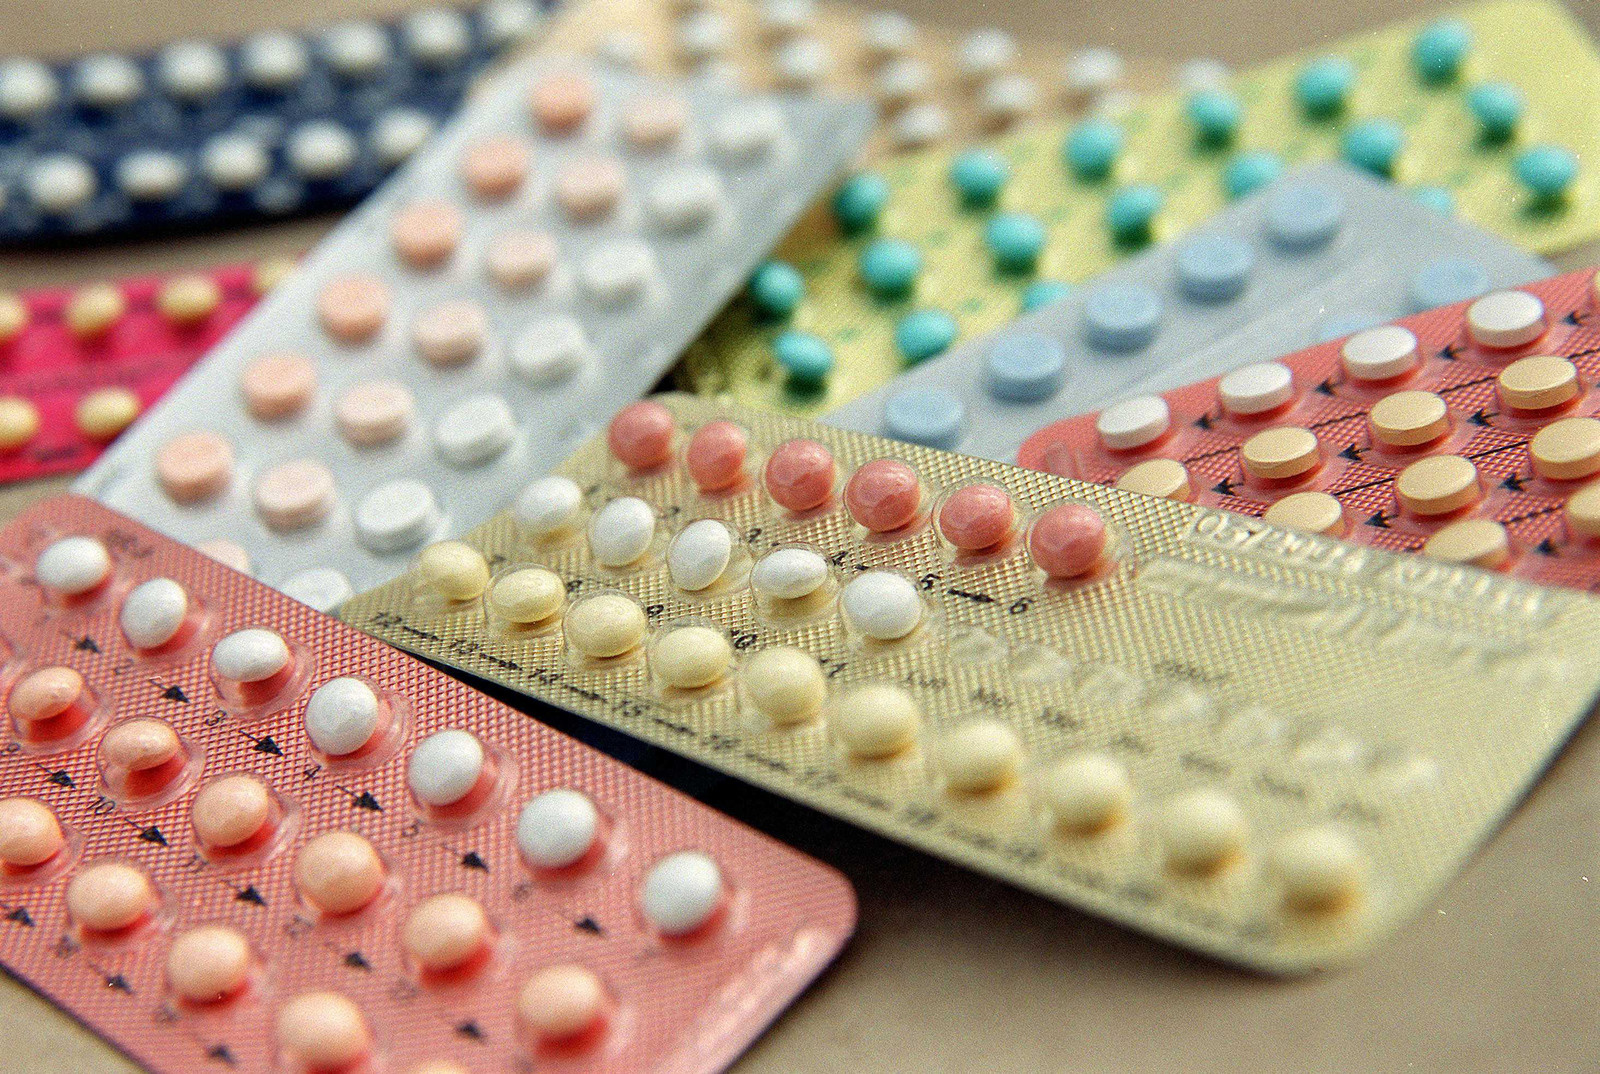 Pillule contraceptive : Optilova, posologie et effets secondaires